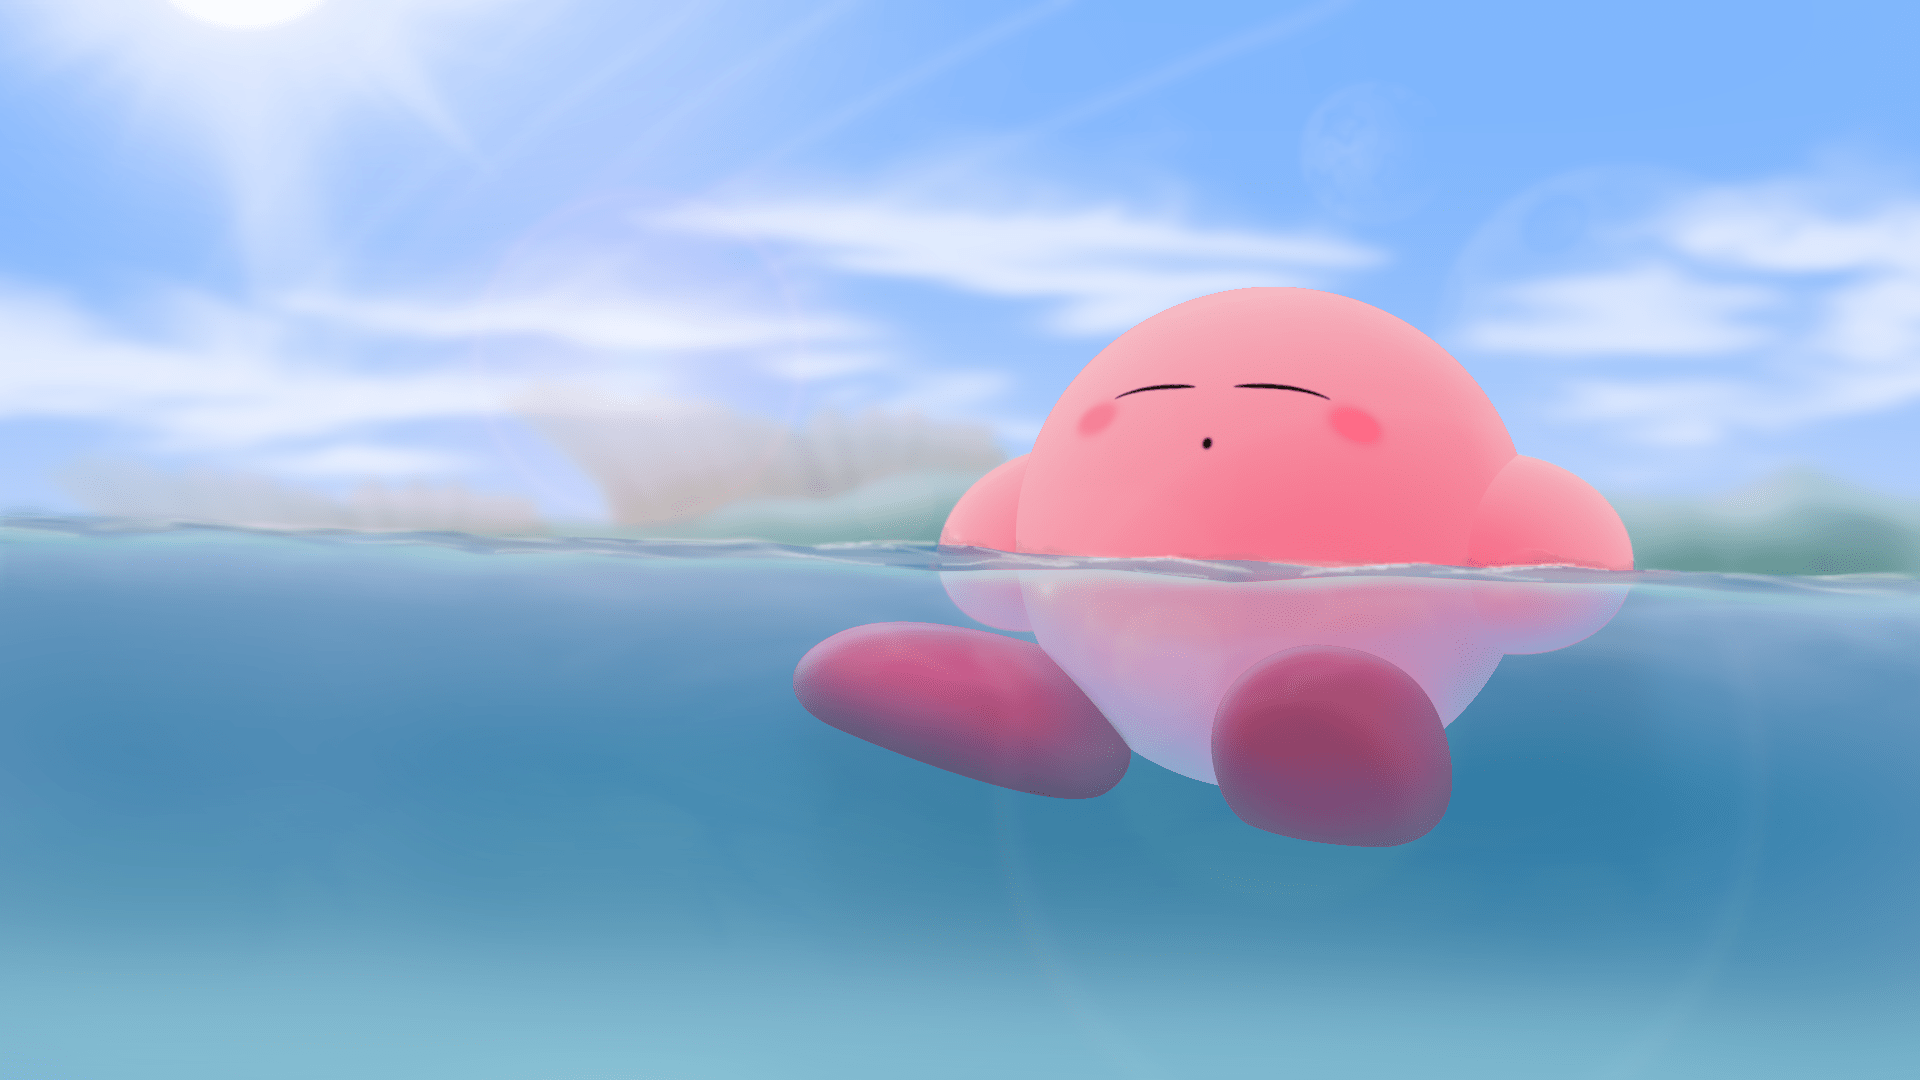 Hình ảnh đẹp Kirby: Cùng khám phá vẻ đẹp thần thánh của nhân vật cực kute Kirby với những hình ảnh siêu đáng yêu và đầy màu sắc. Hãy cùng chiêm ngưỡng những khung hình tuyệt vời này để cảm nhận được sức hút đặc biệt của Kirby.